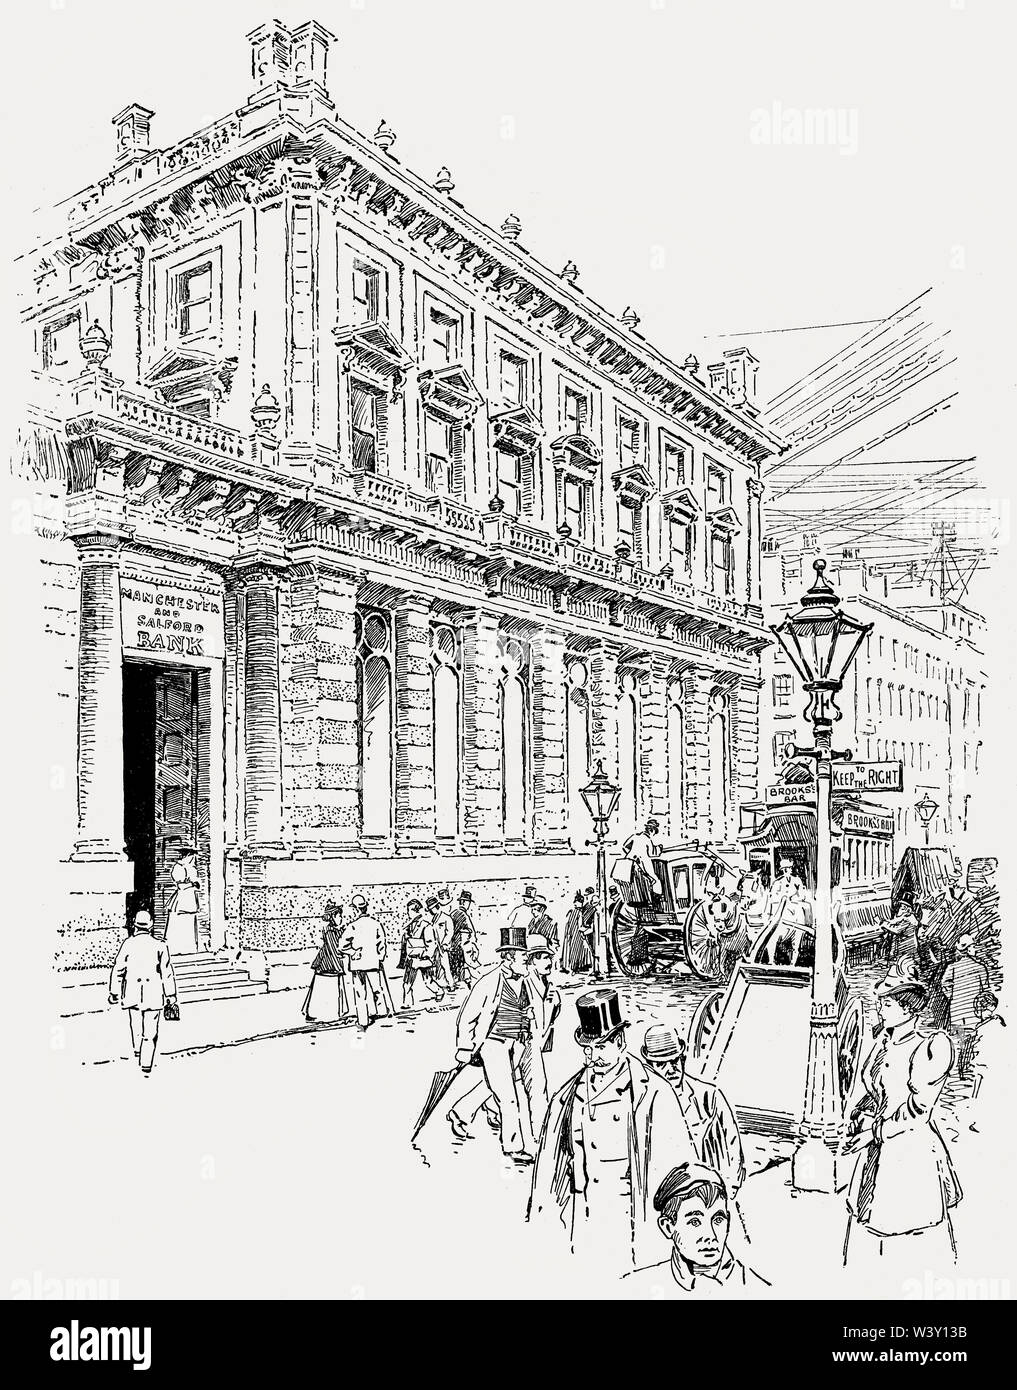 E Manchester Salford Savings Bank, capo ufficio, Manchester, Inghilterra, Regno Unito, secolo XIX Foto Stock